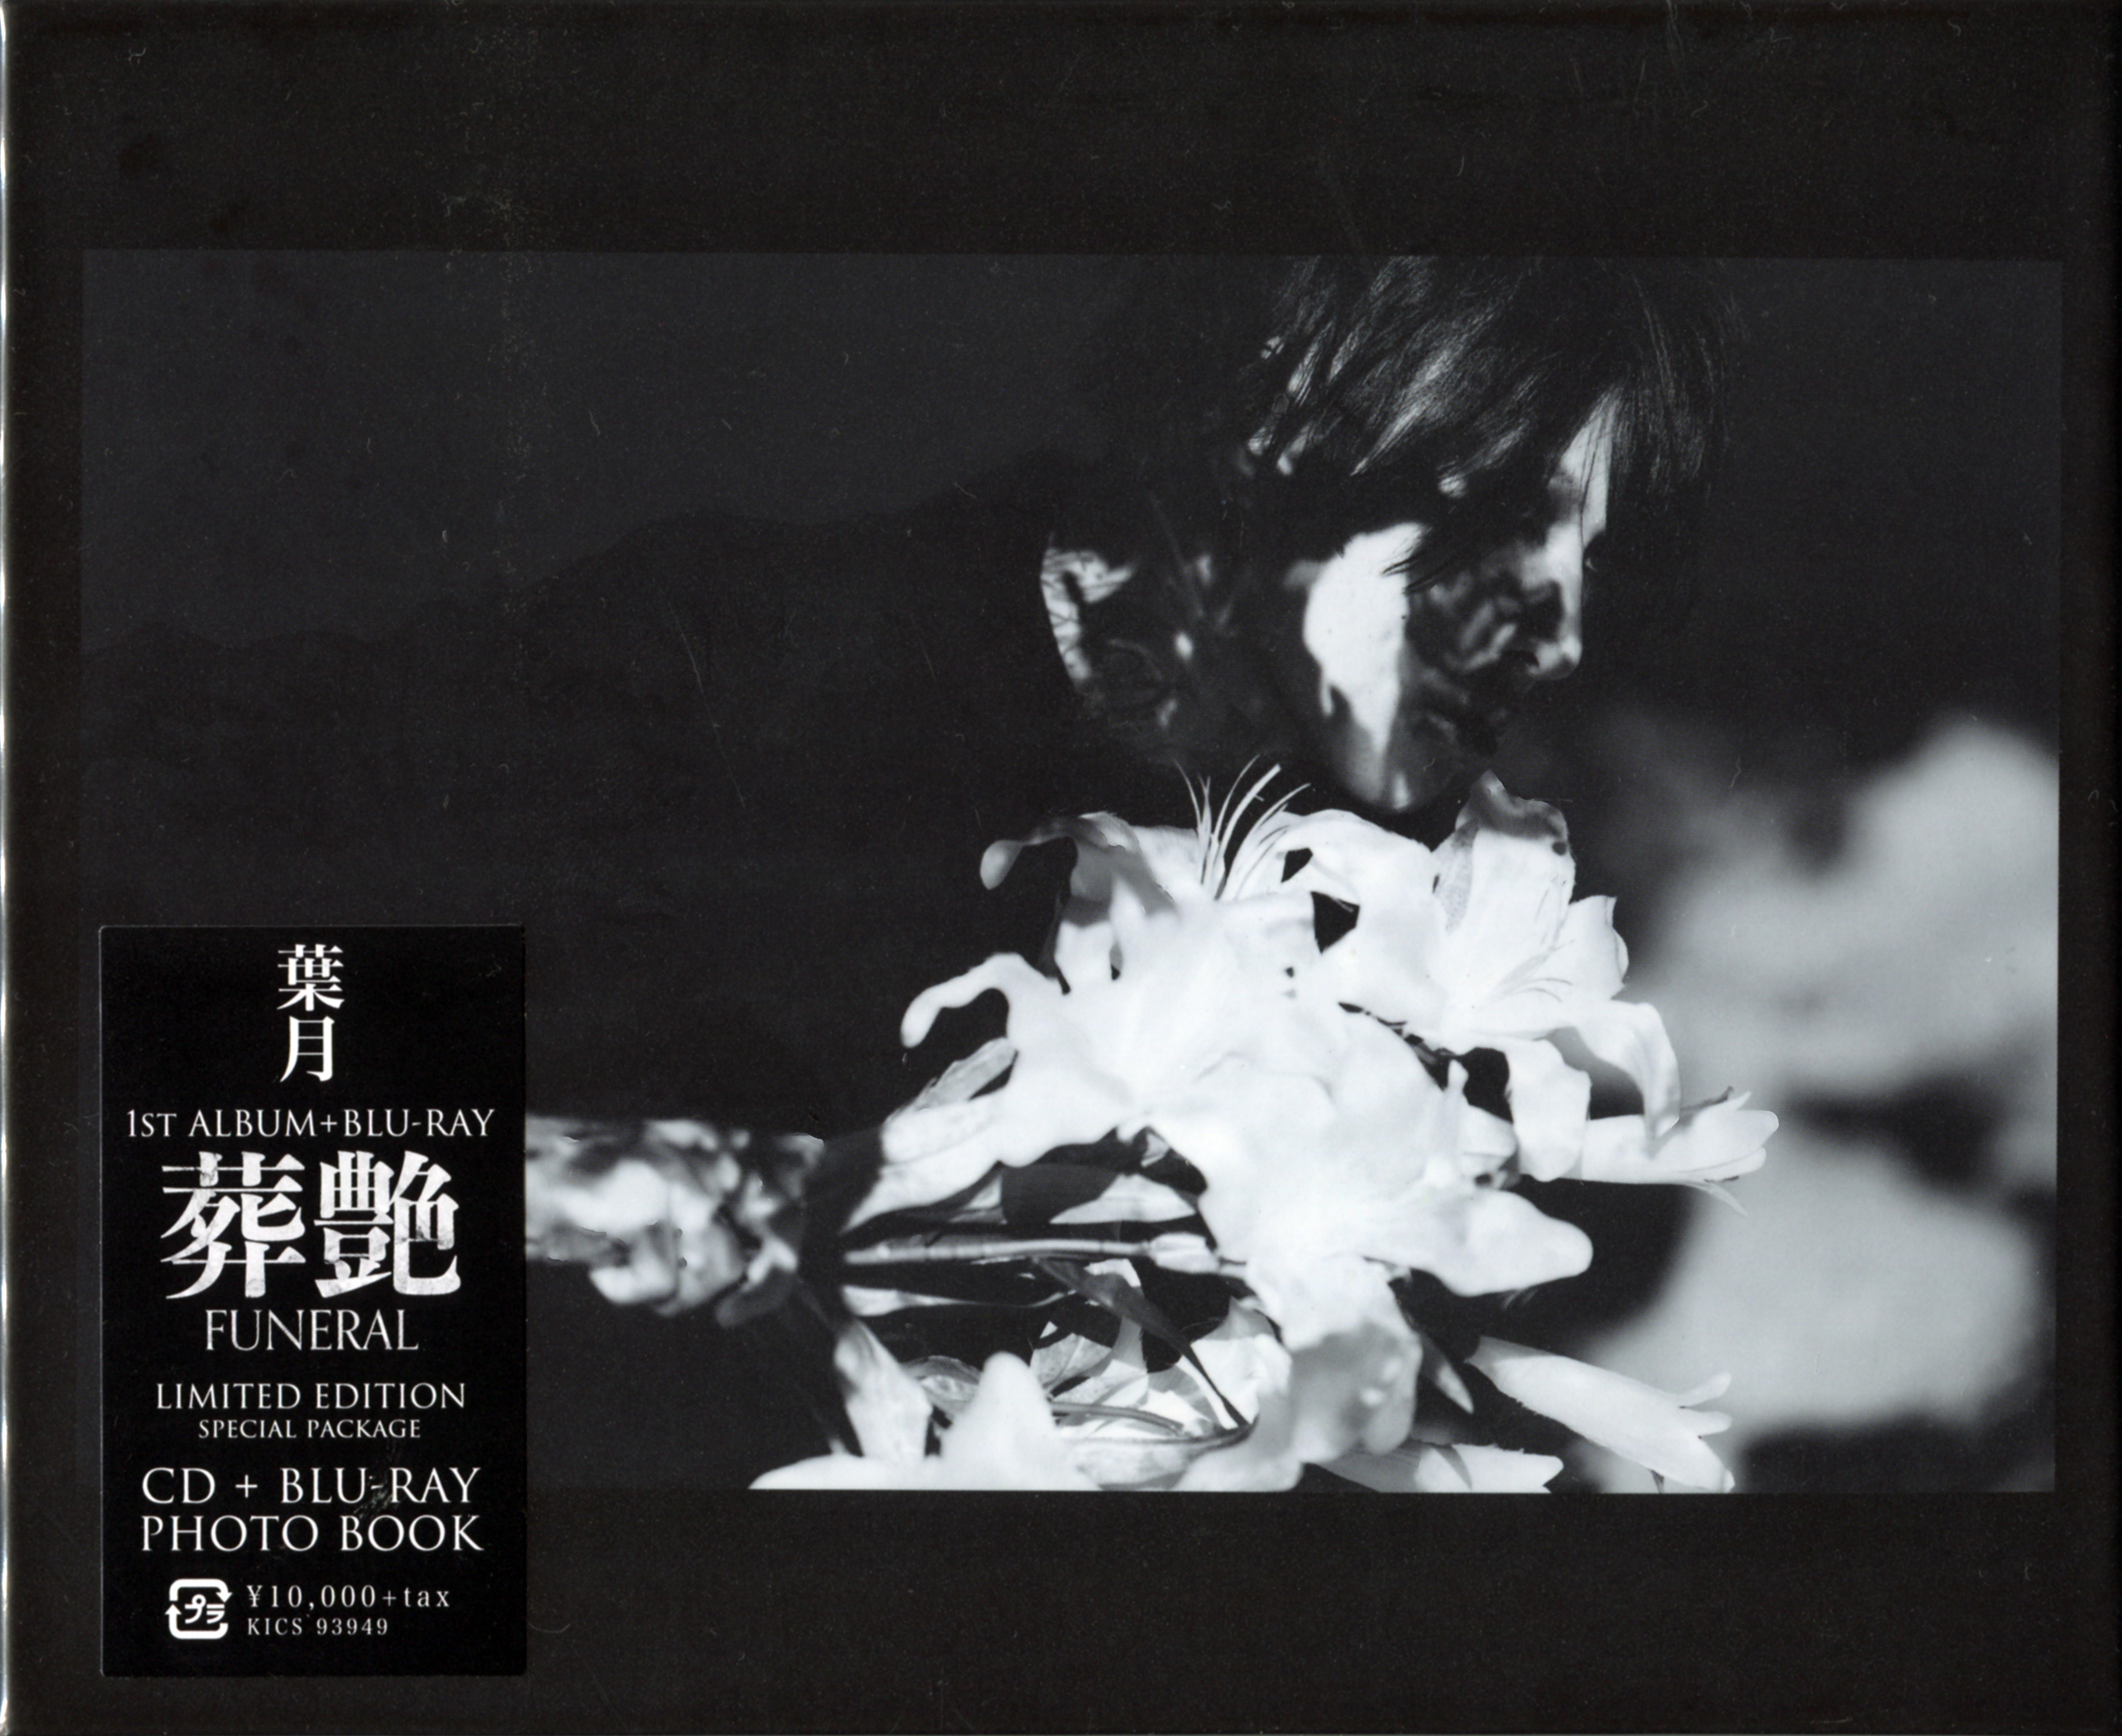 葉月 (Hazuki) - 「葬艶 - FUNERAL -」(2020) [FLAC + MP3 320 + Blu-ray ISO]